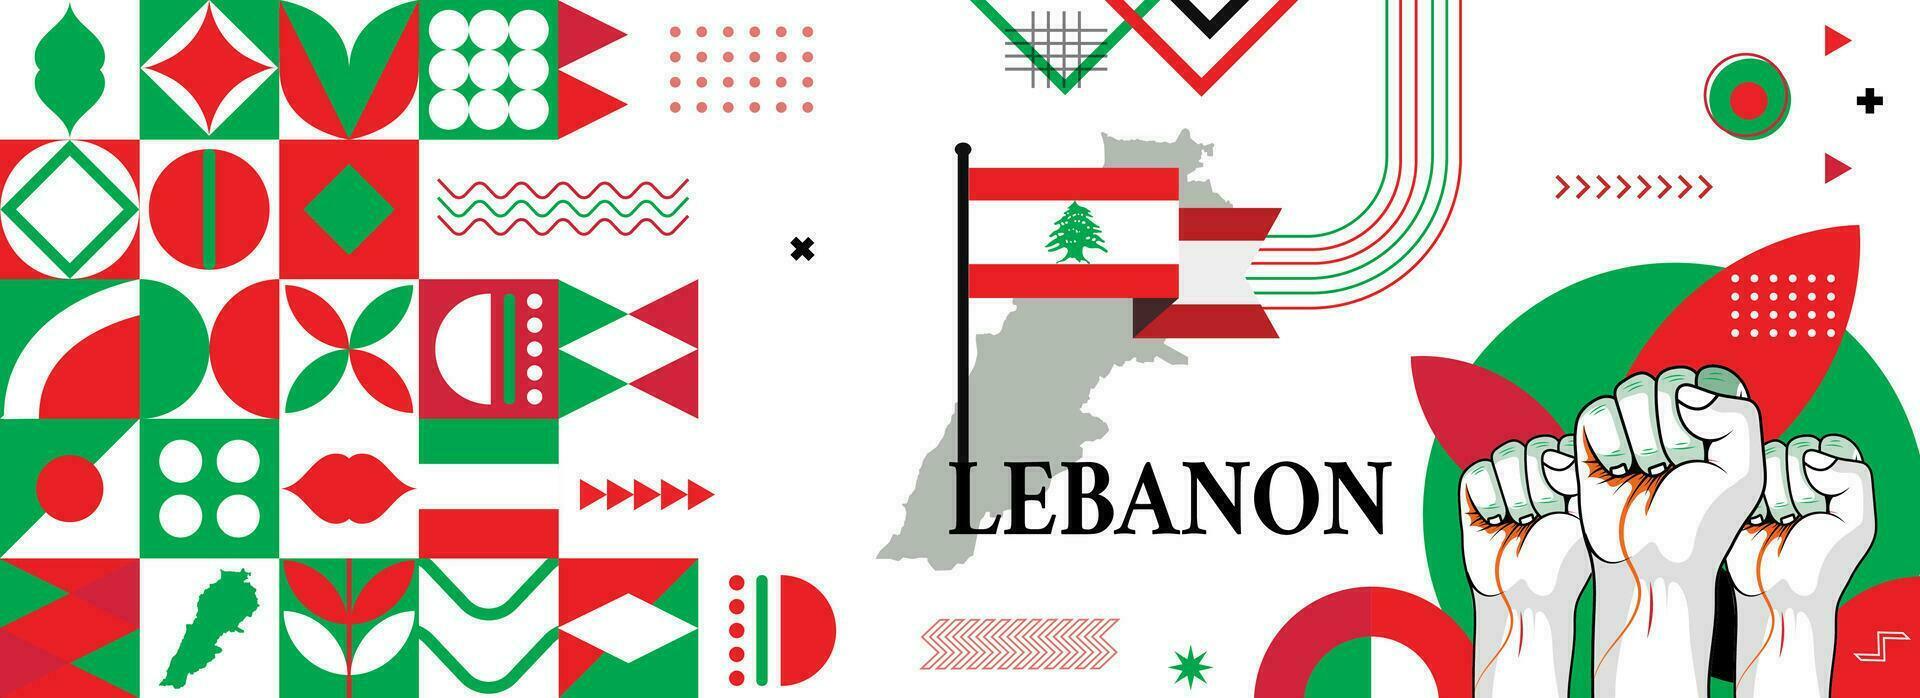 Karte und Flagge von Libanon National oder Unabhängigkeit Tag Banner mit angehoben Hände oder Fäuste., Flagge Farben Thema Hintergrund und geometrisch abstrakt retro modern bunt Design vektor